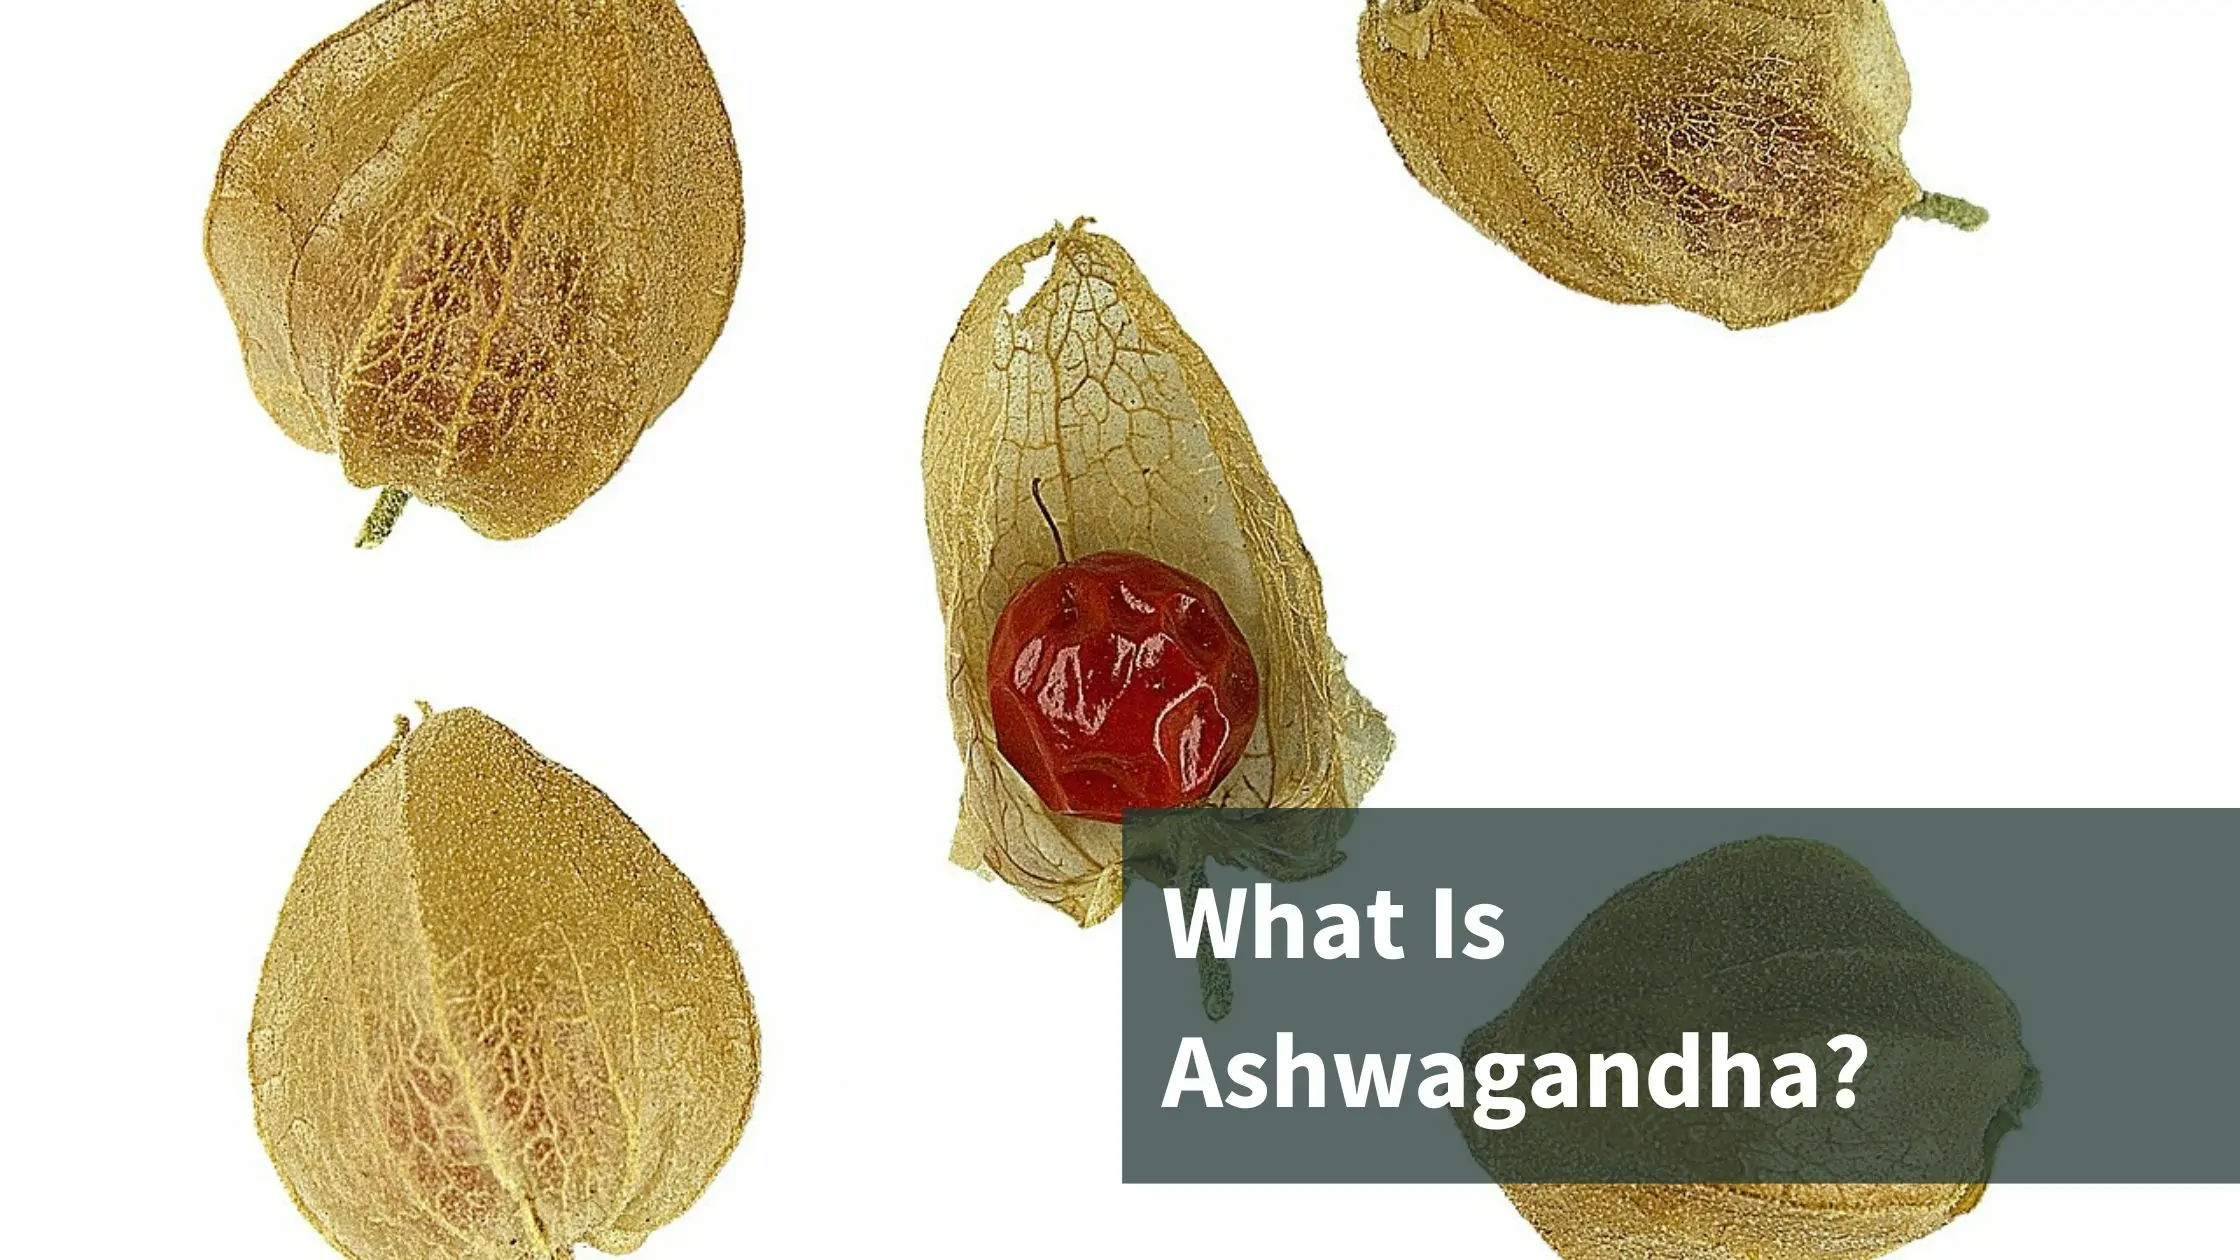 What Is Ashwagandha?